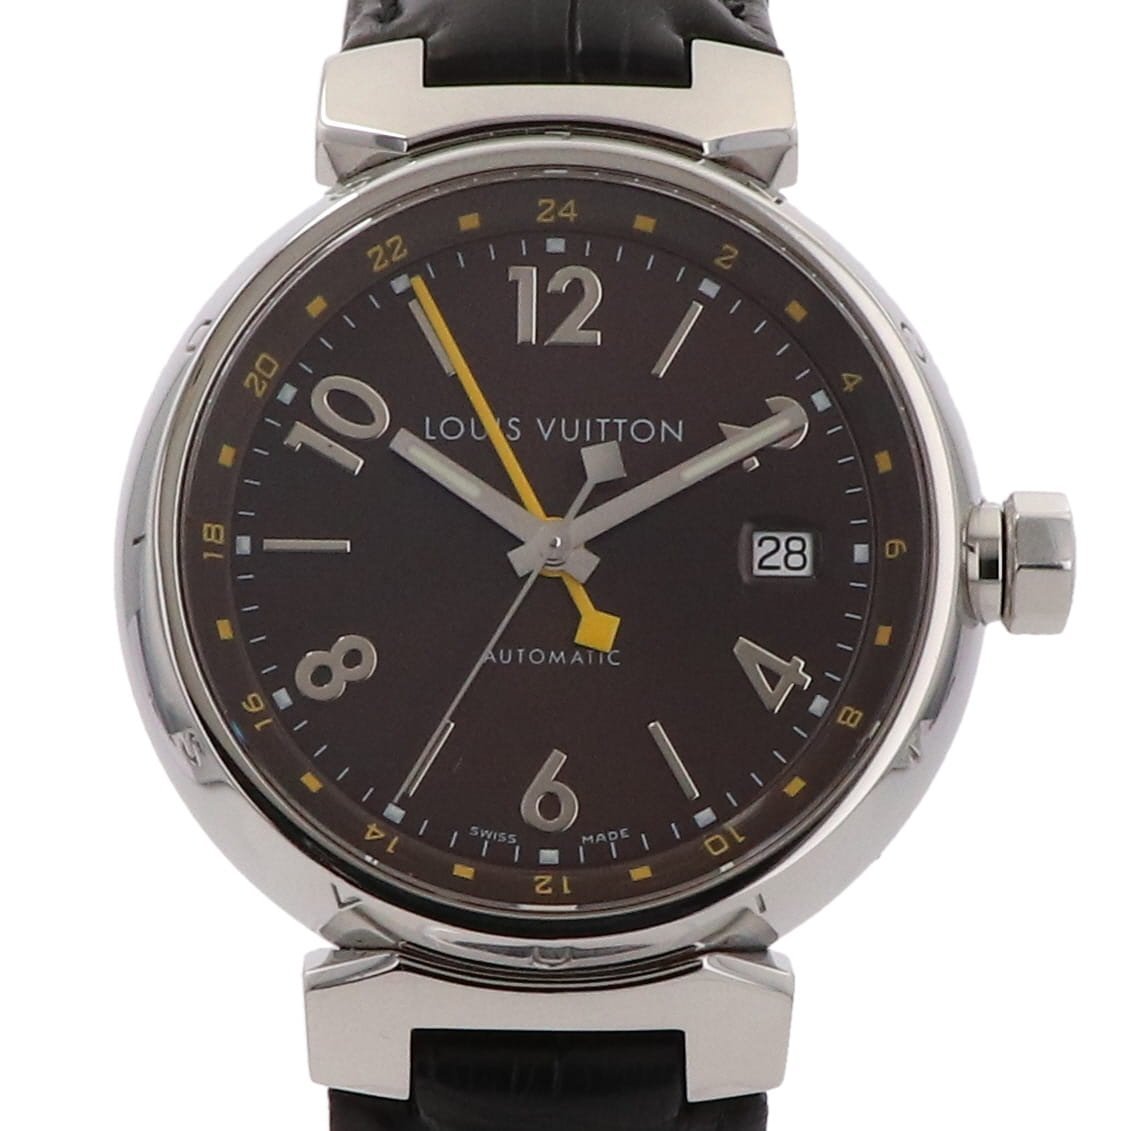 ルイ・ヴィトン Louis Vuitton タンブール GMT Q1131 腕時計 SS レザー 自動巻き ブラウン メンズ 【中古】